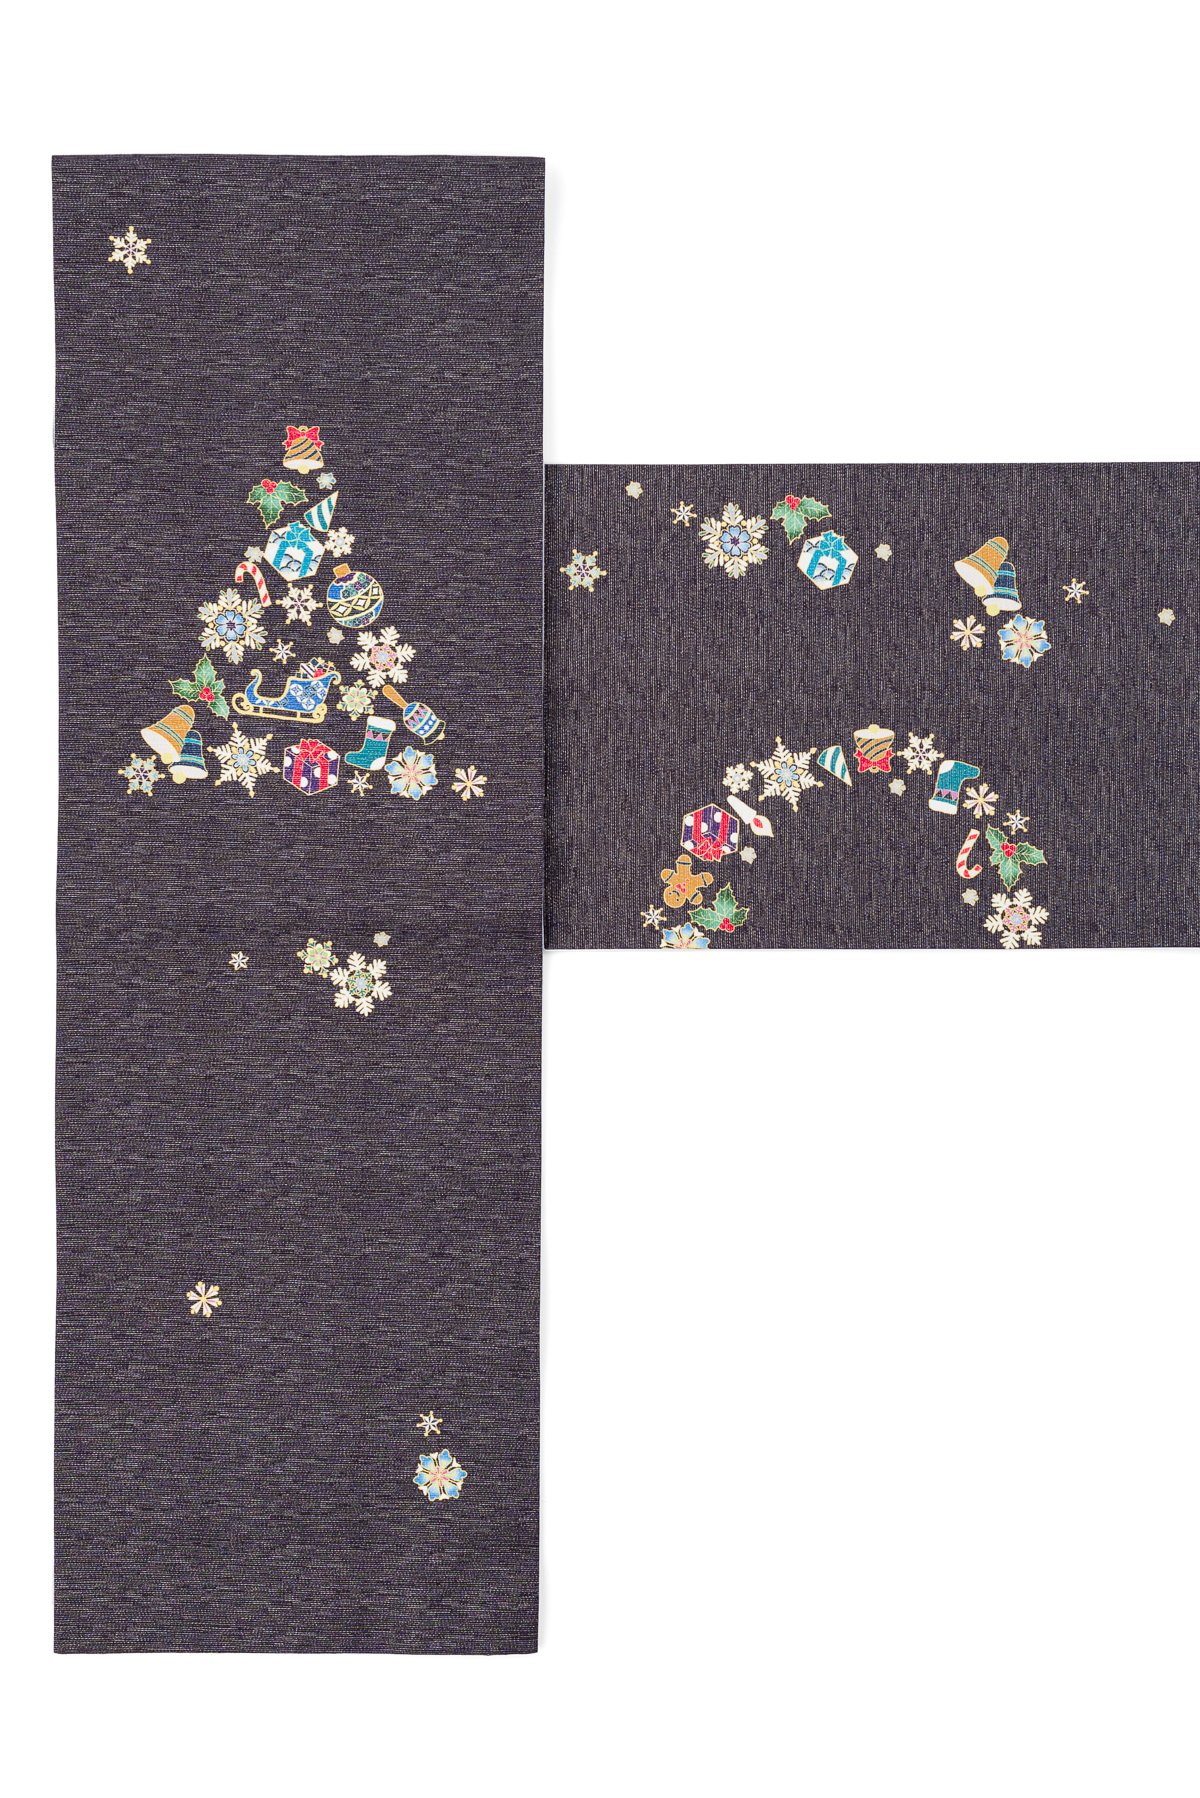 【着物と帯 時流】F251◆正絹 袋帯◆クリスマス ツリー 未使用品 未仕立て付下げ